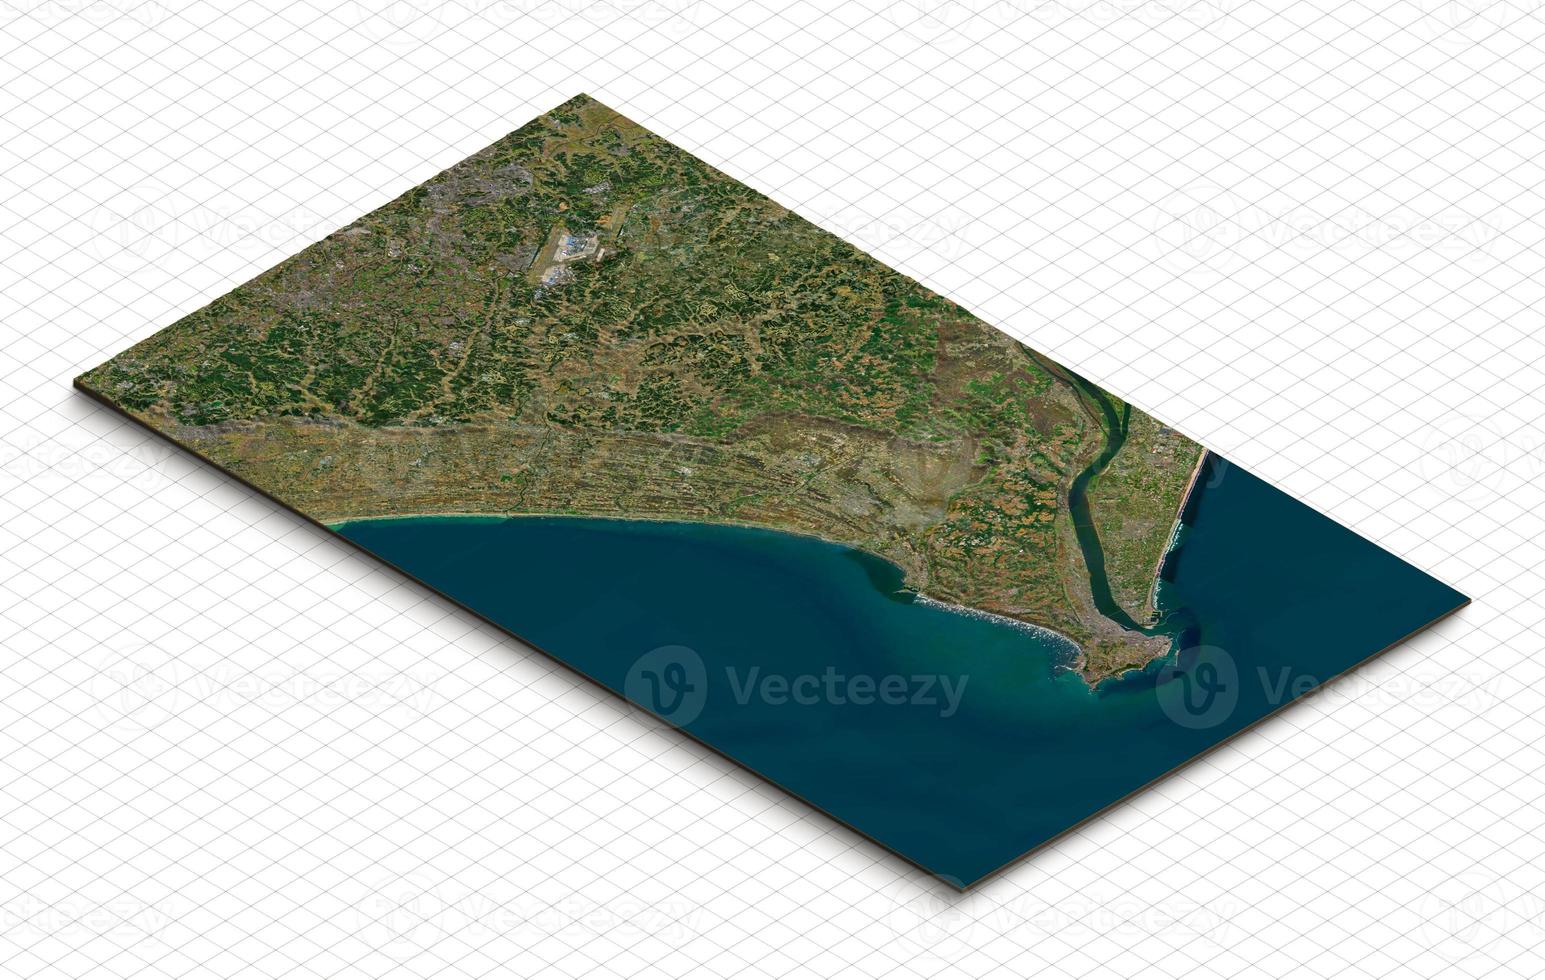 3d modelo de narita, chiba, Japón. isométrica mapa virtual terreno 3d para infografía. geografía y topografía planeta tierra aplanado satélite ver foto